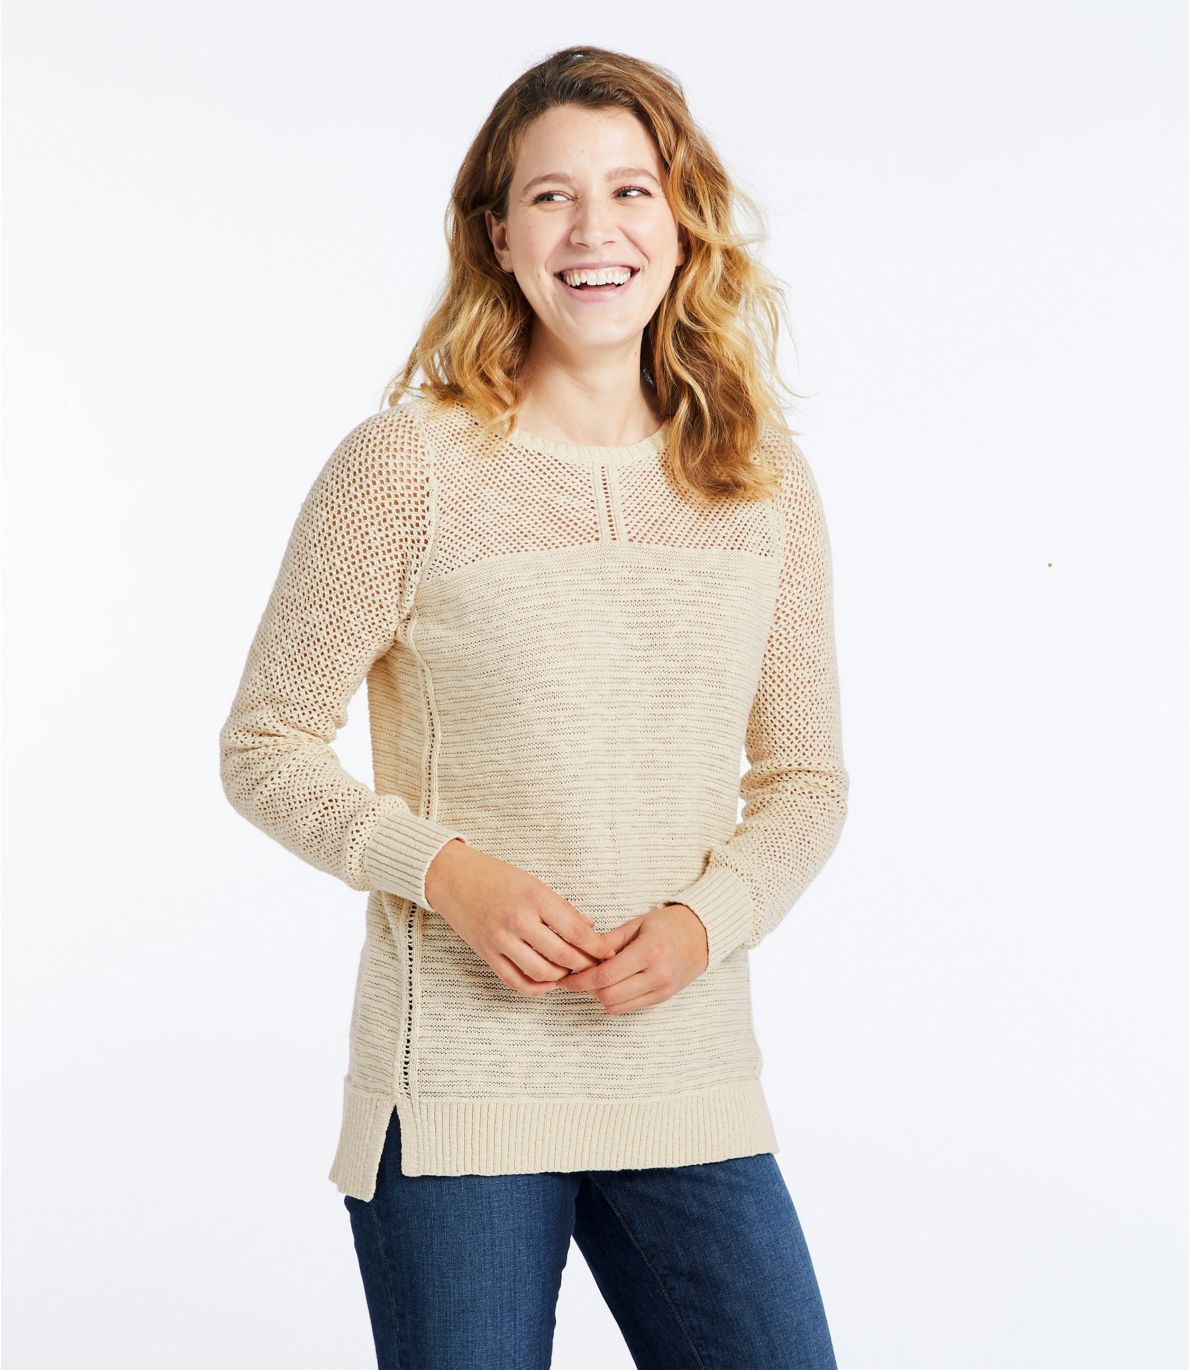 Women's Pointelle Mixed-Stitch Sweater, Tunic